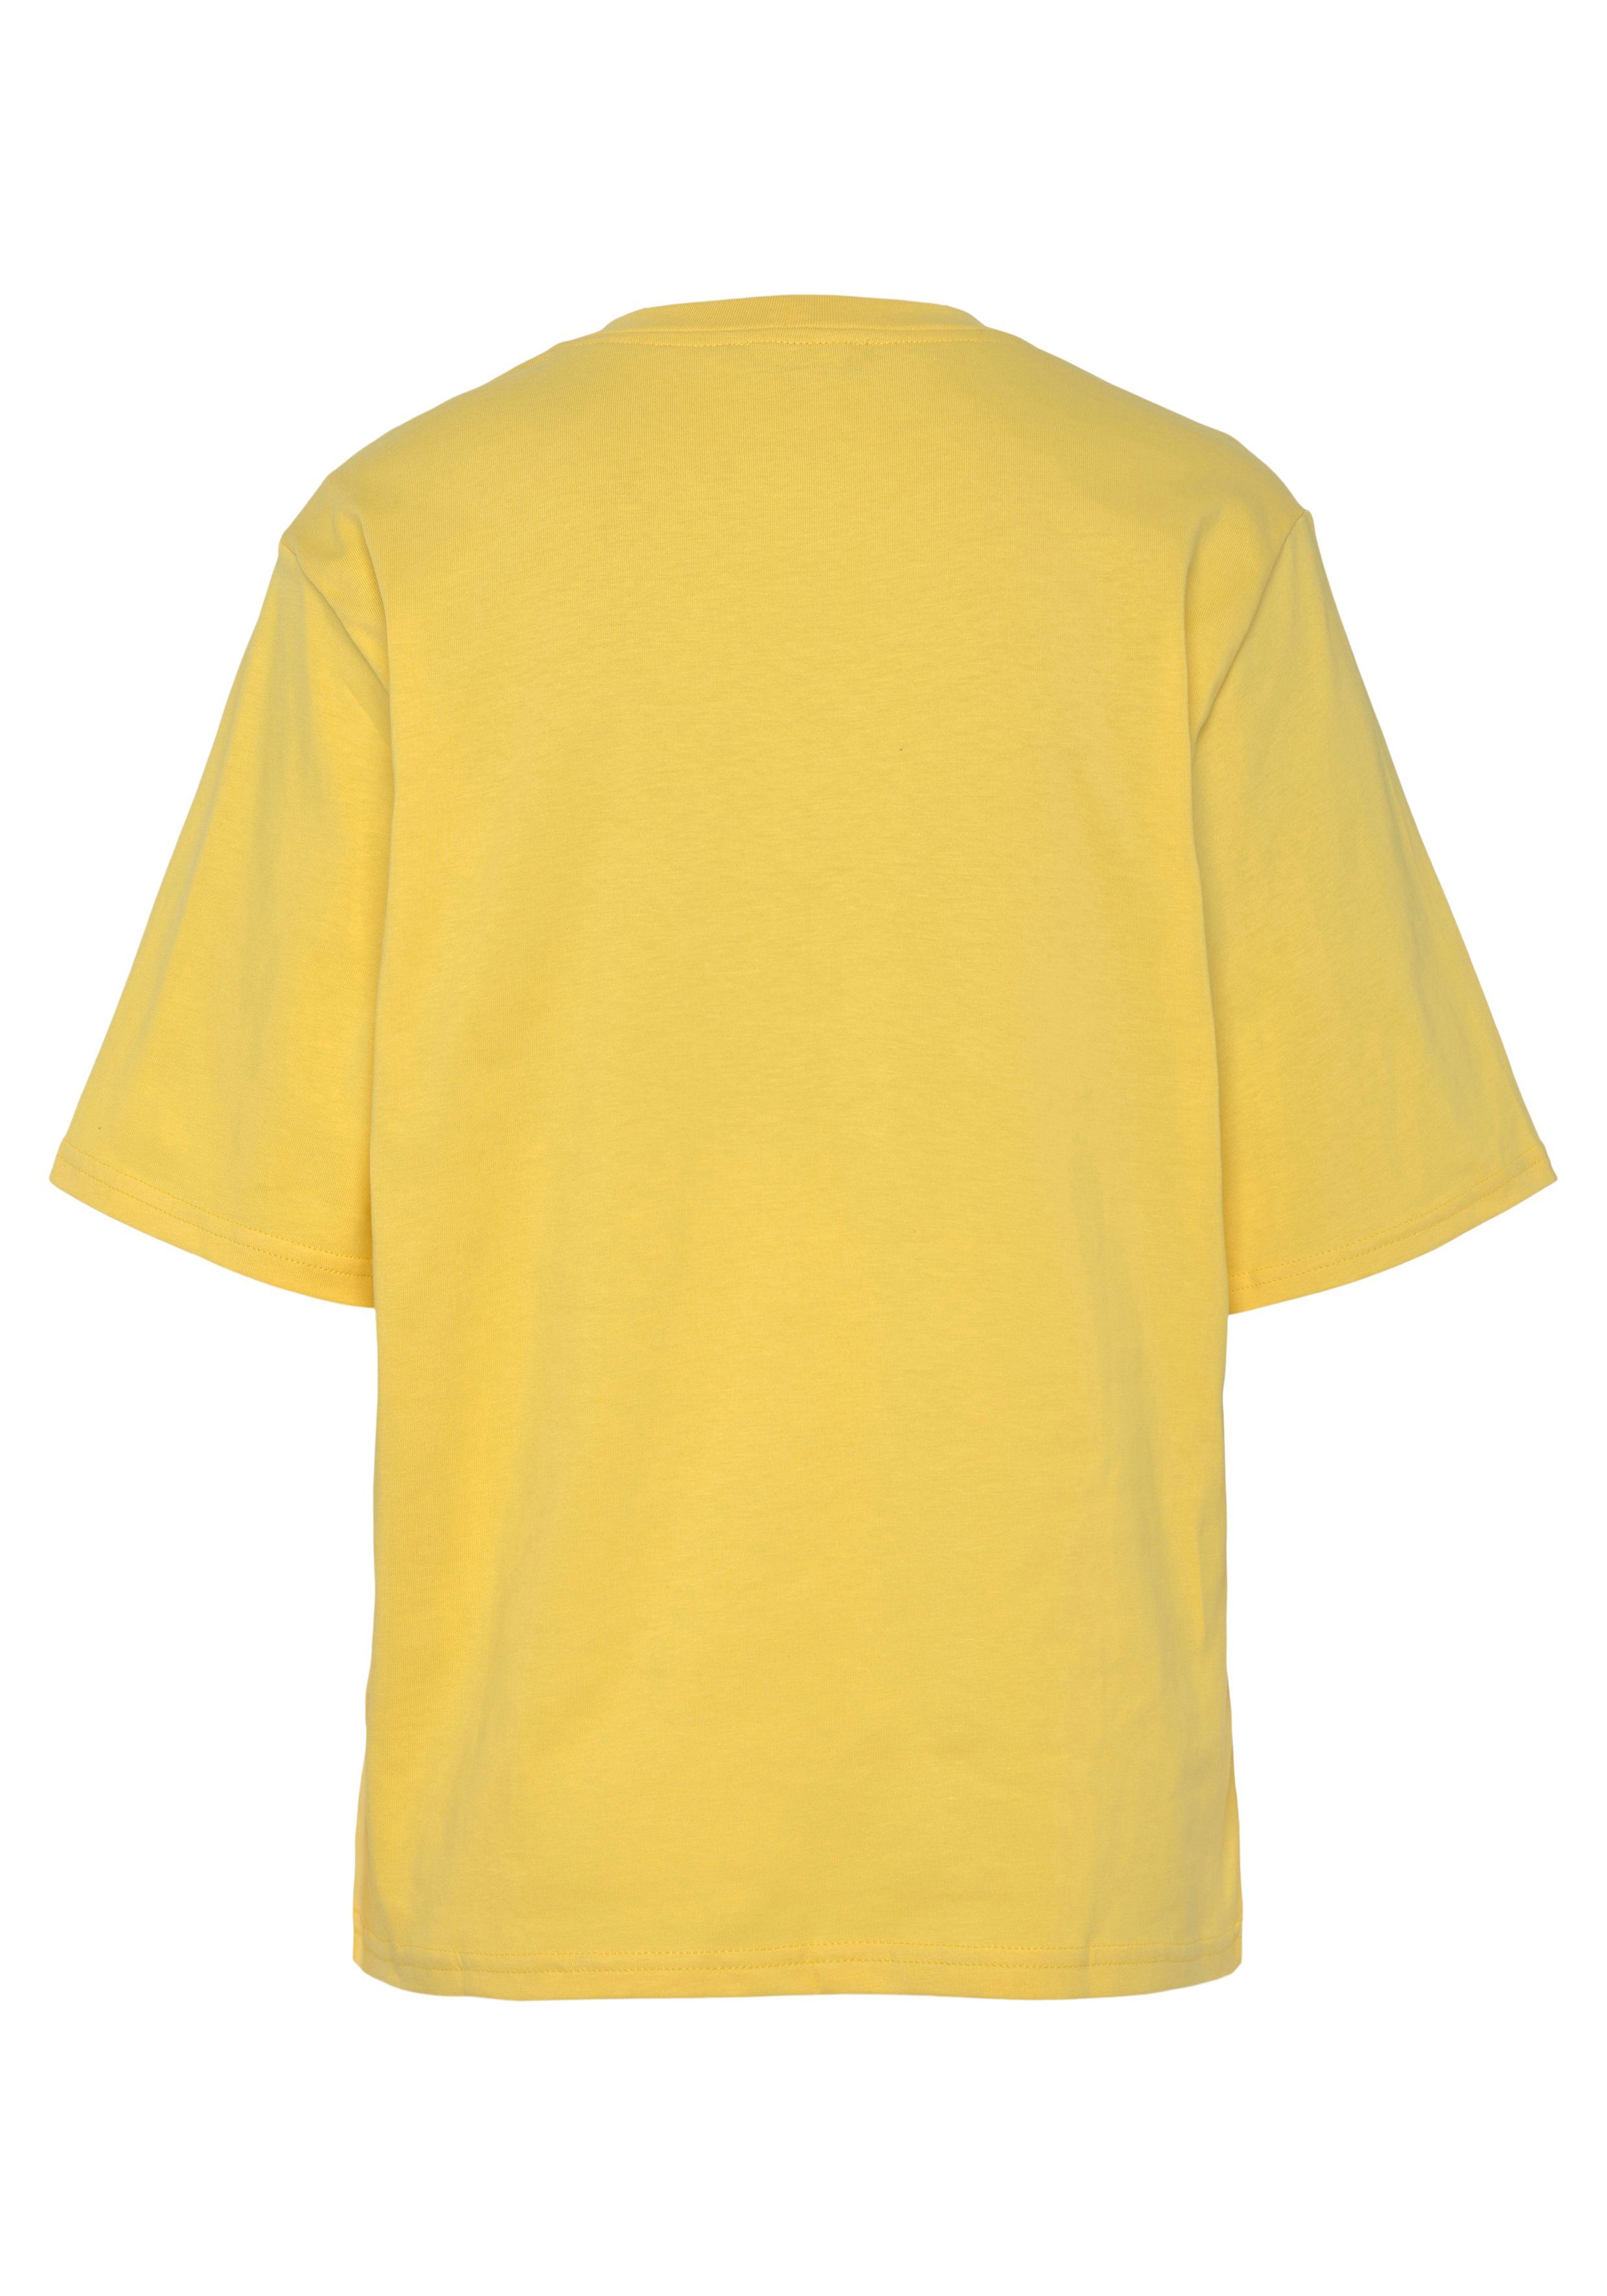 United Colors Benetton Brust gelb auf T-Shirt mit der of Logodruck